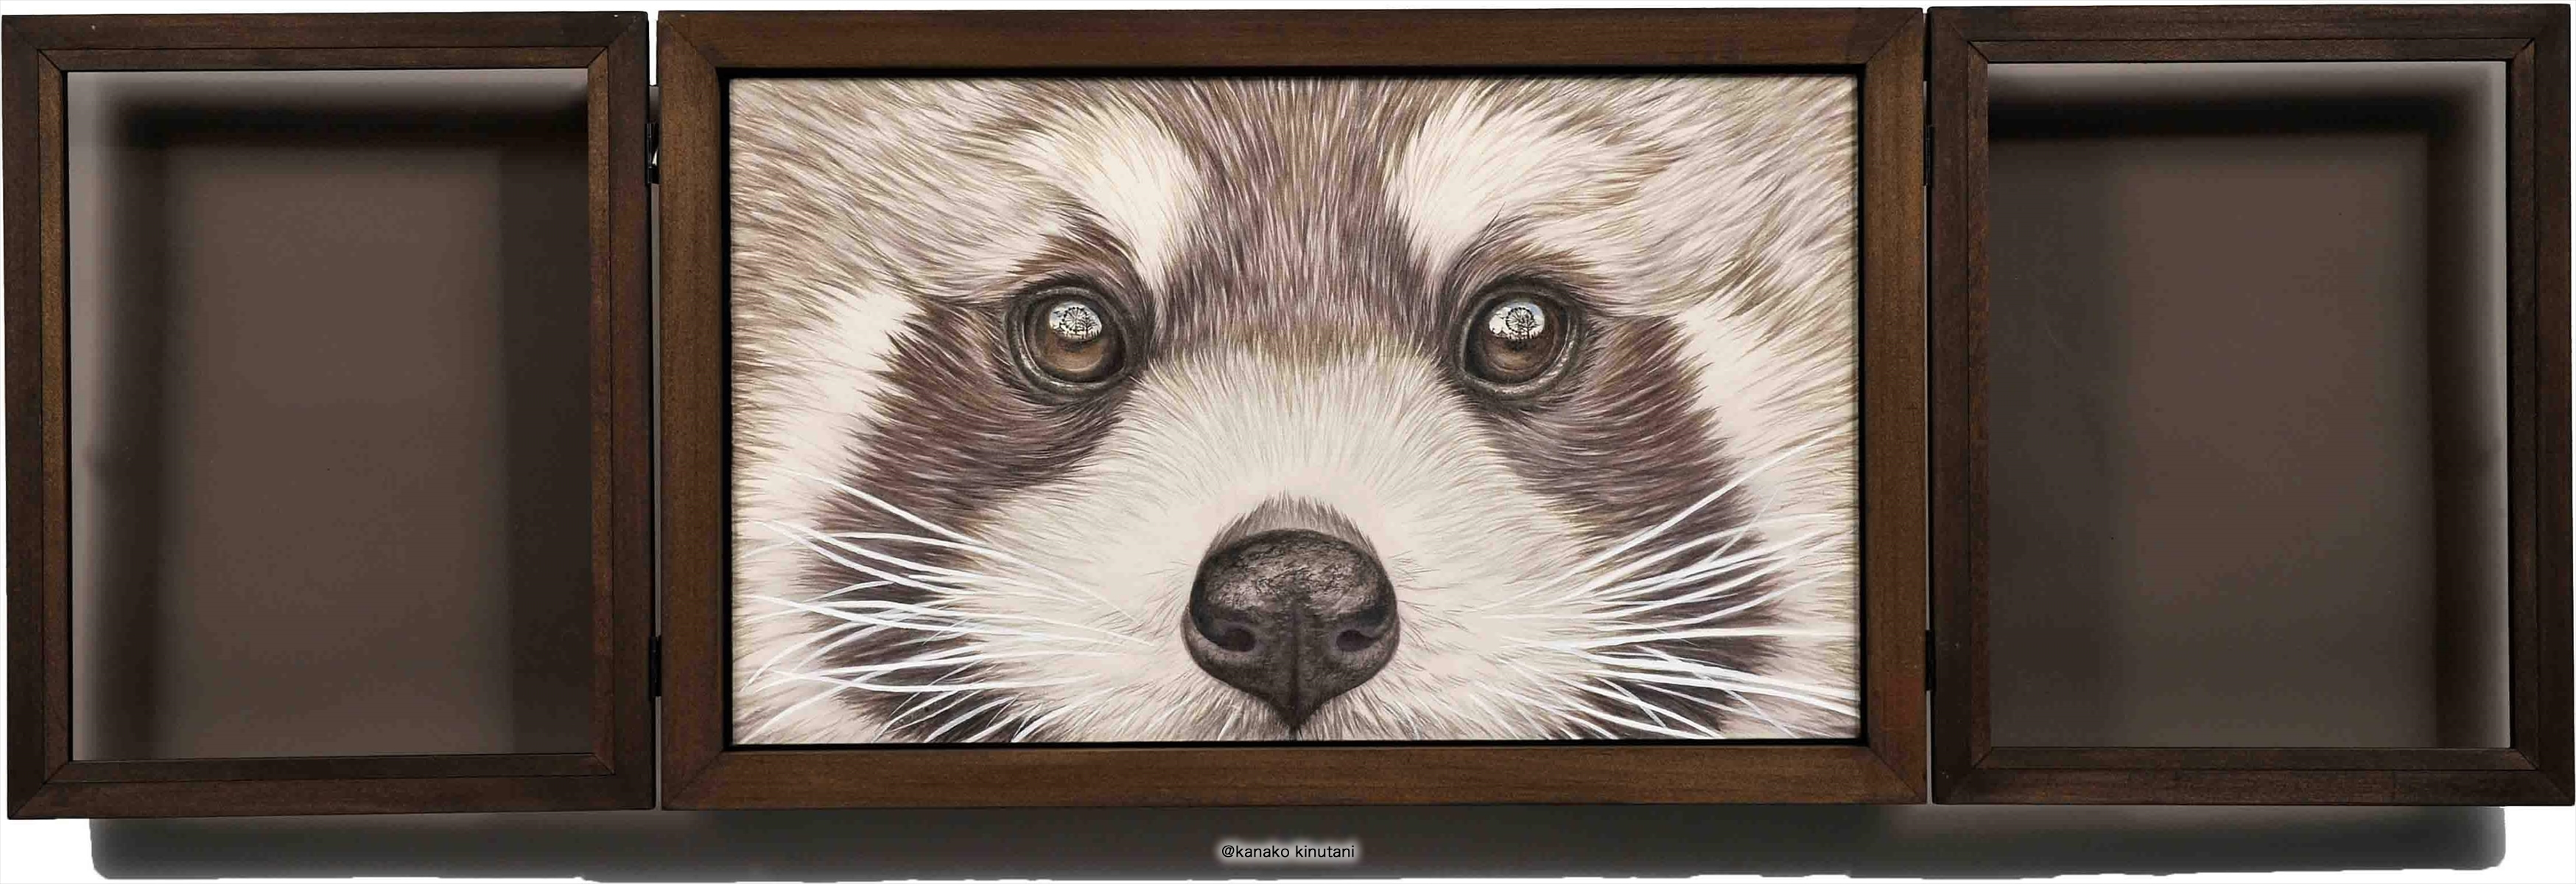 Window-Lesser panda-